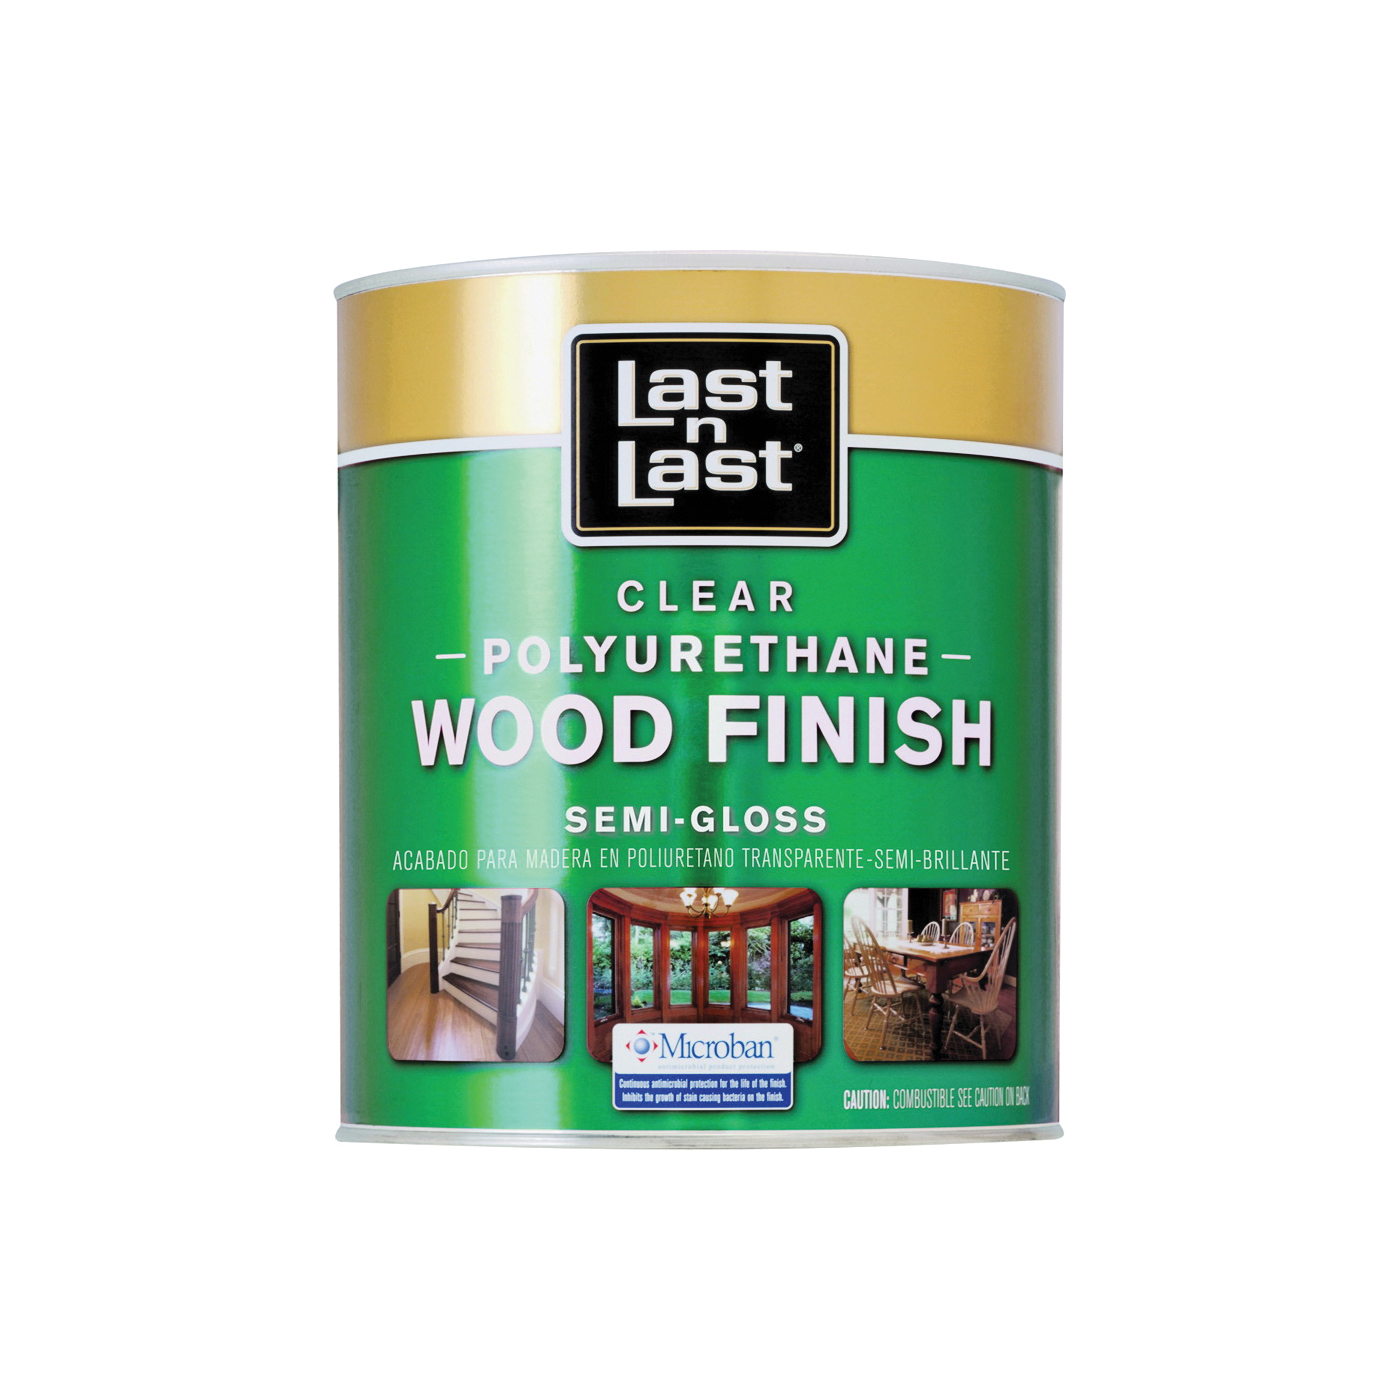 53204 Polyurethane Wood Finish, Semi-Gloss, Liquid, Clear, 1 qt, Can